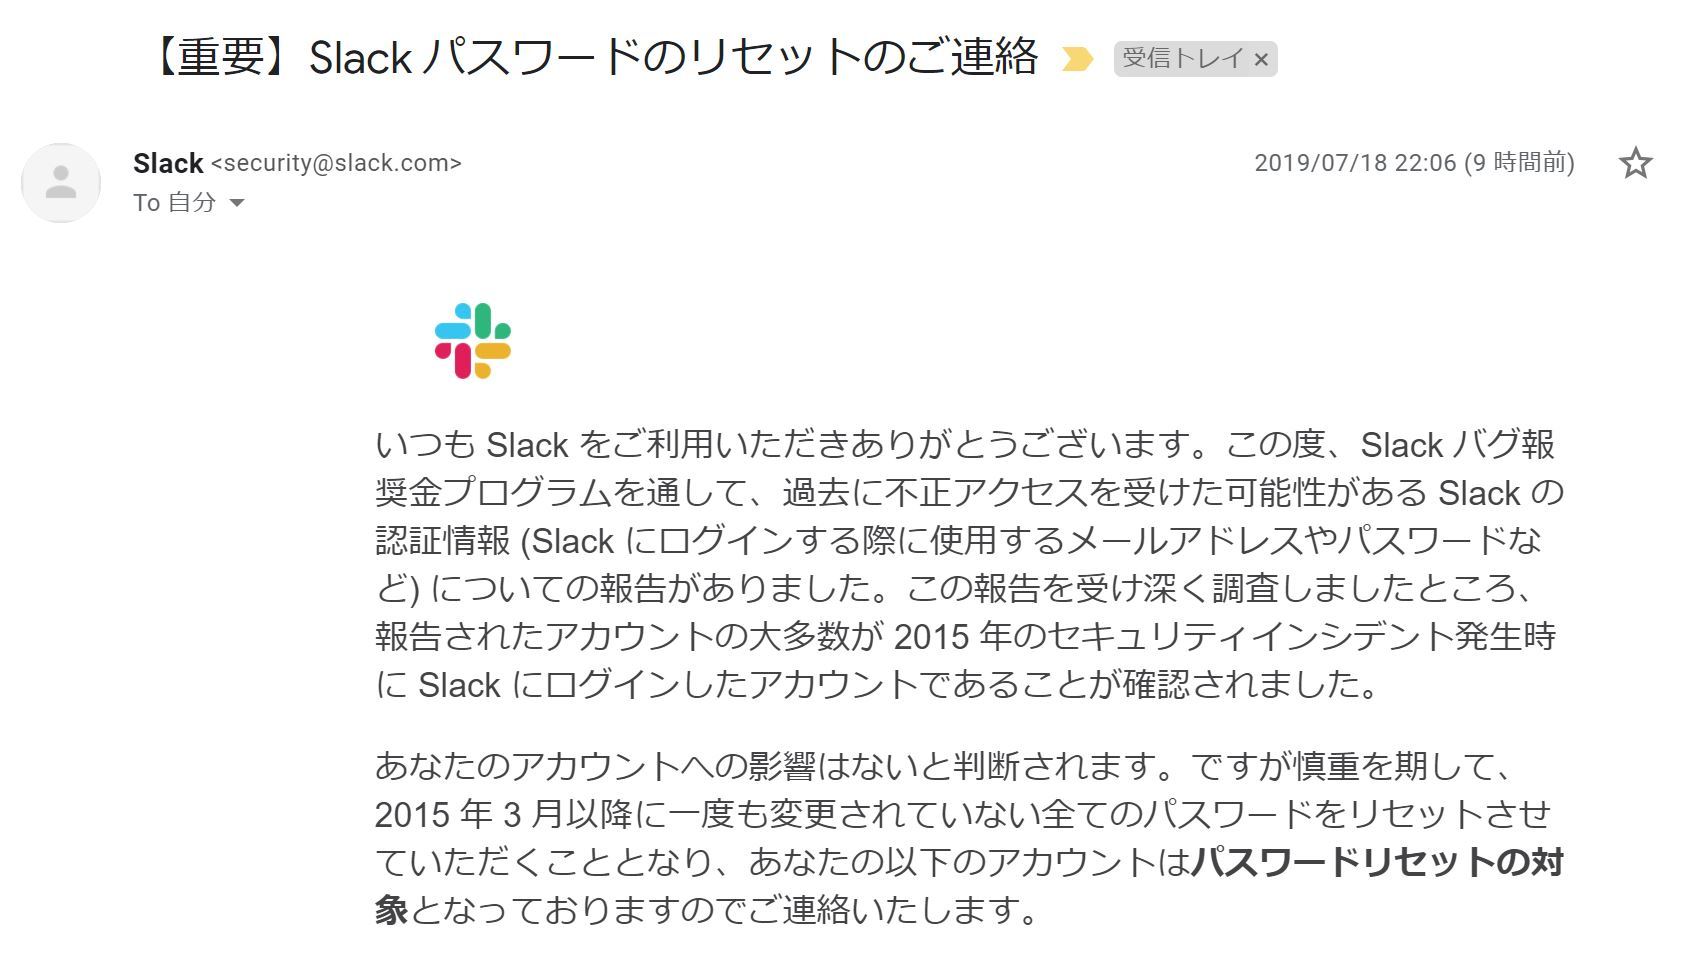 Slack ユーザーの約1 のパスワードをリセット 再設定をメールで呼び掛け Itmedia News